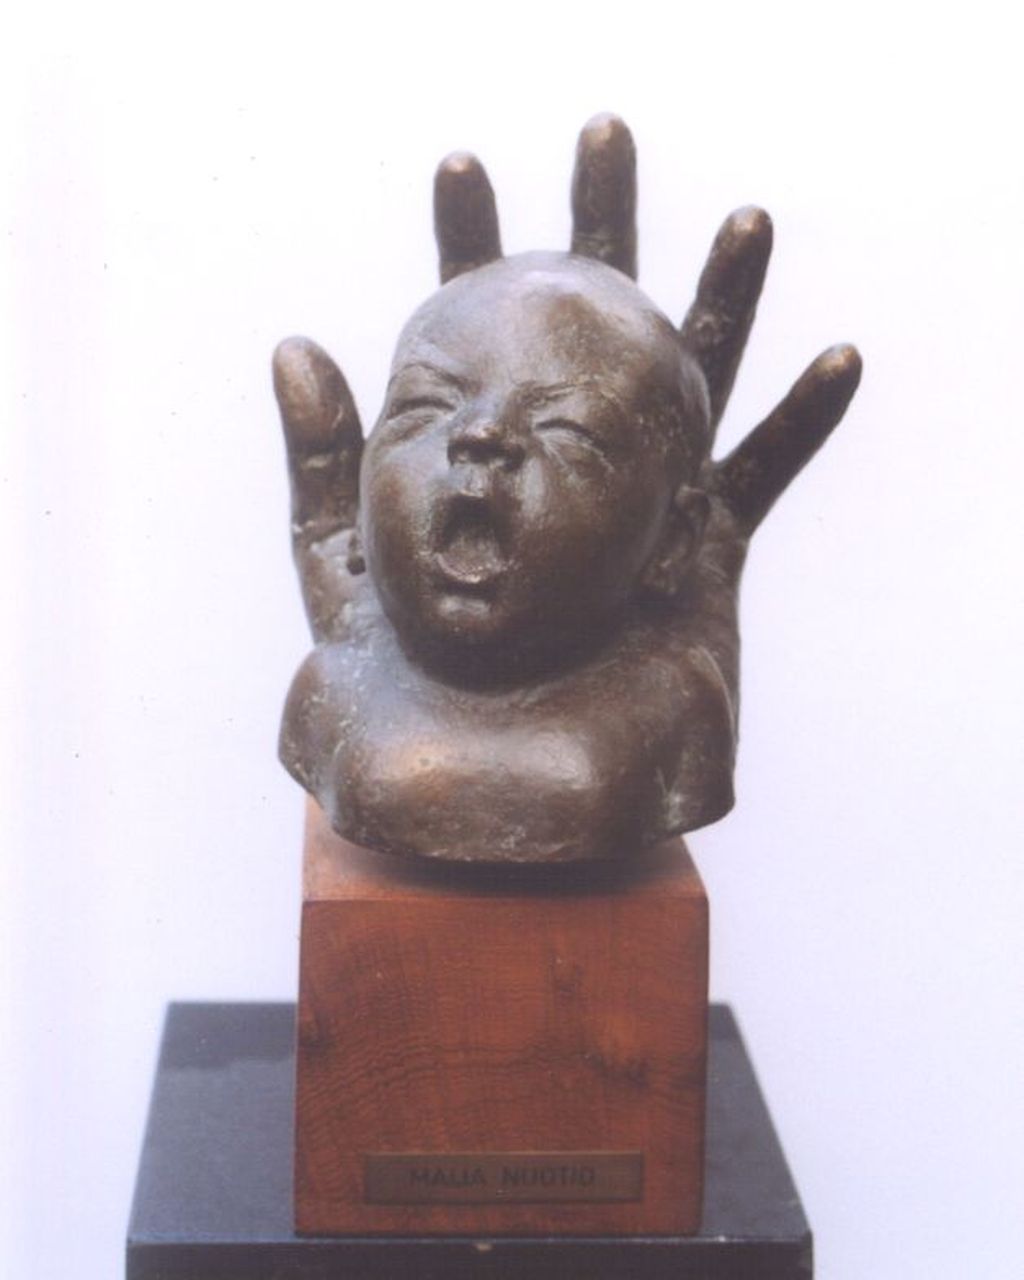 Nuotio M.H.K.  | 'Maija' Hilma Kaarina Nuotio, Babyhoofdje gevat in een hand, brons 21,5 x 18,5 cm, gesigneerd op zijkant hand en gedateerd '74